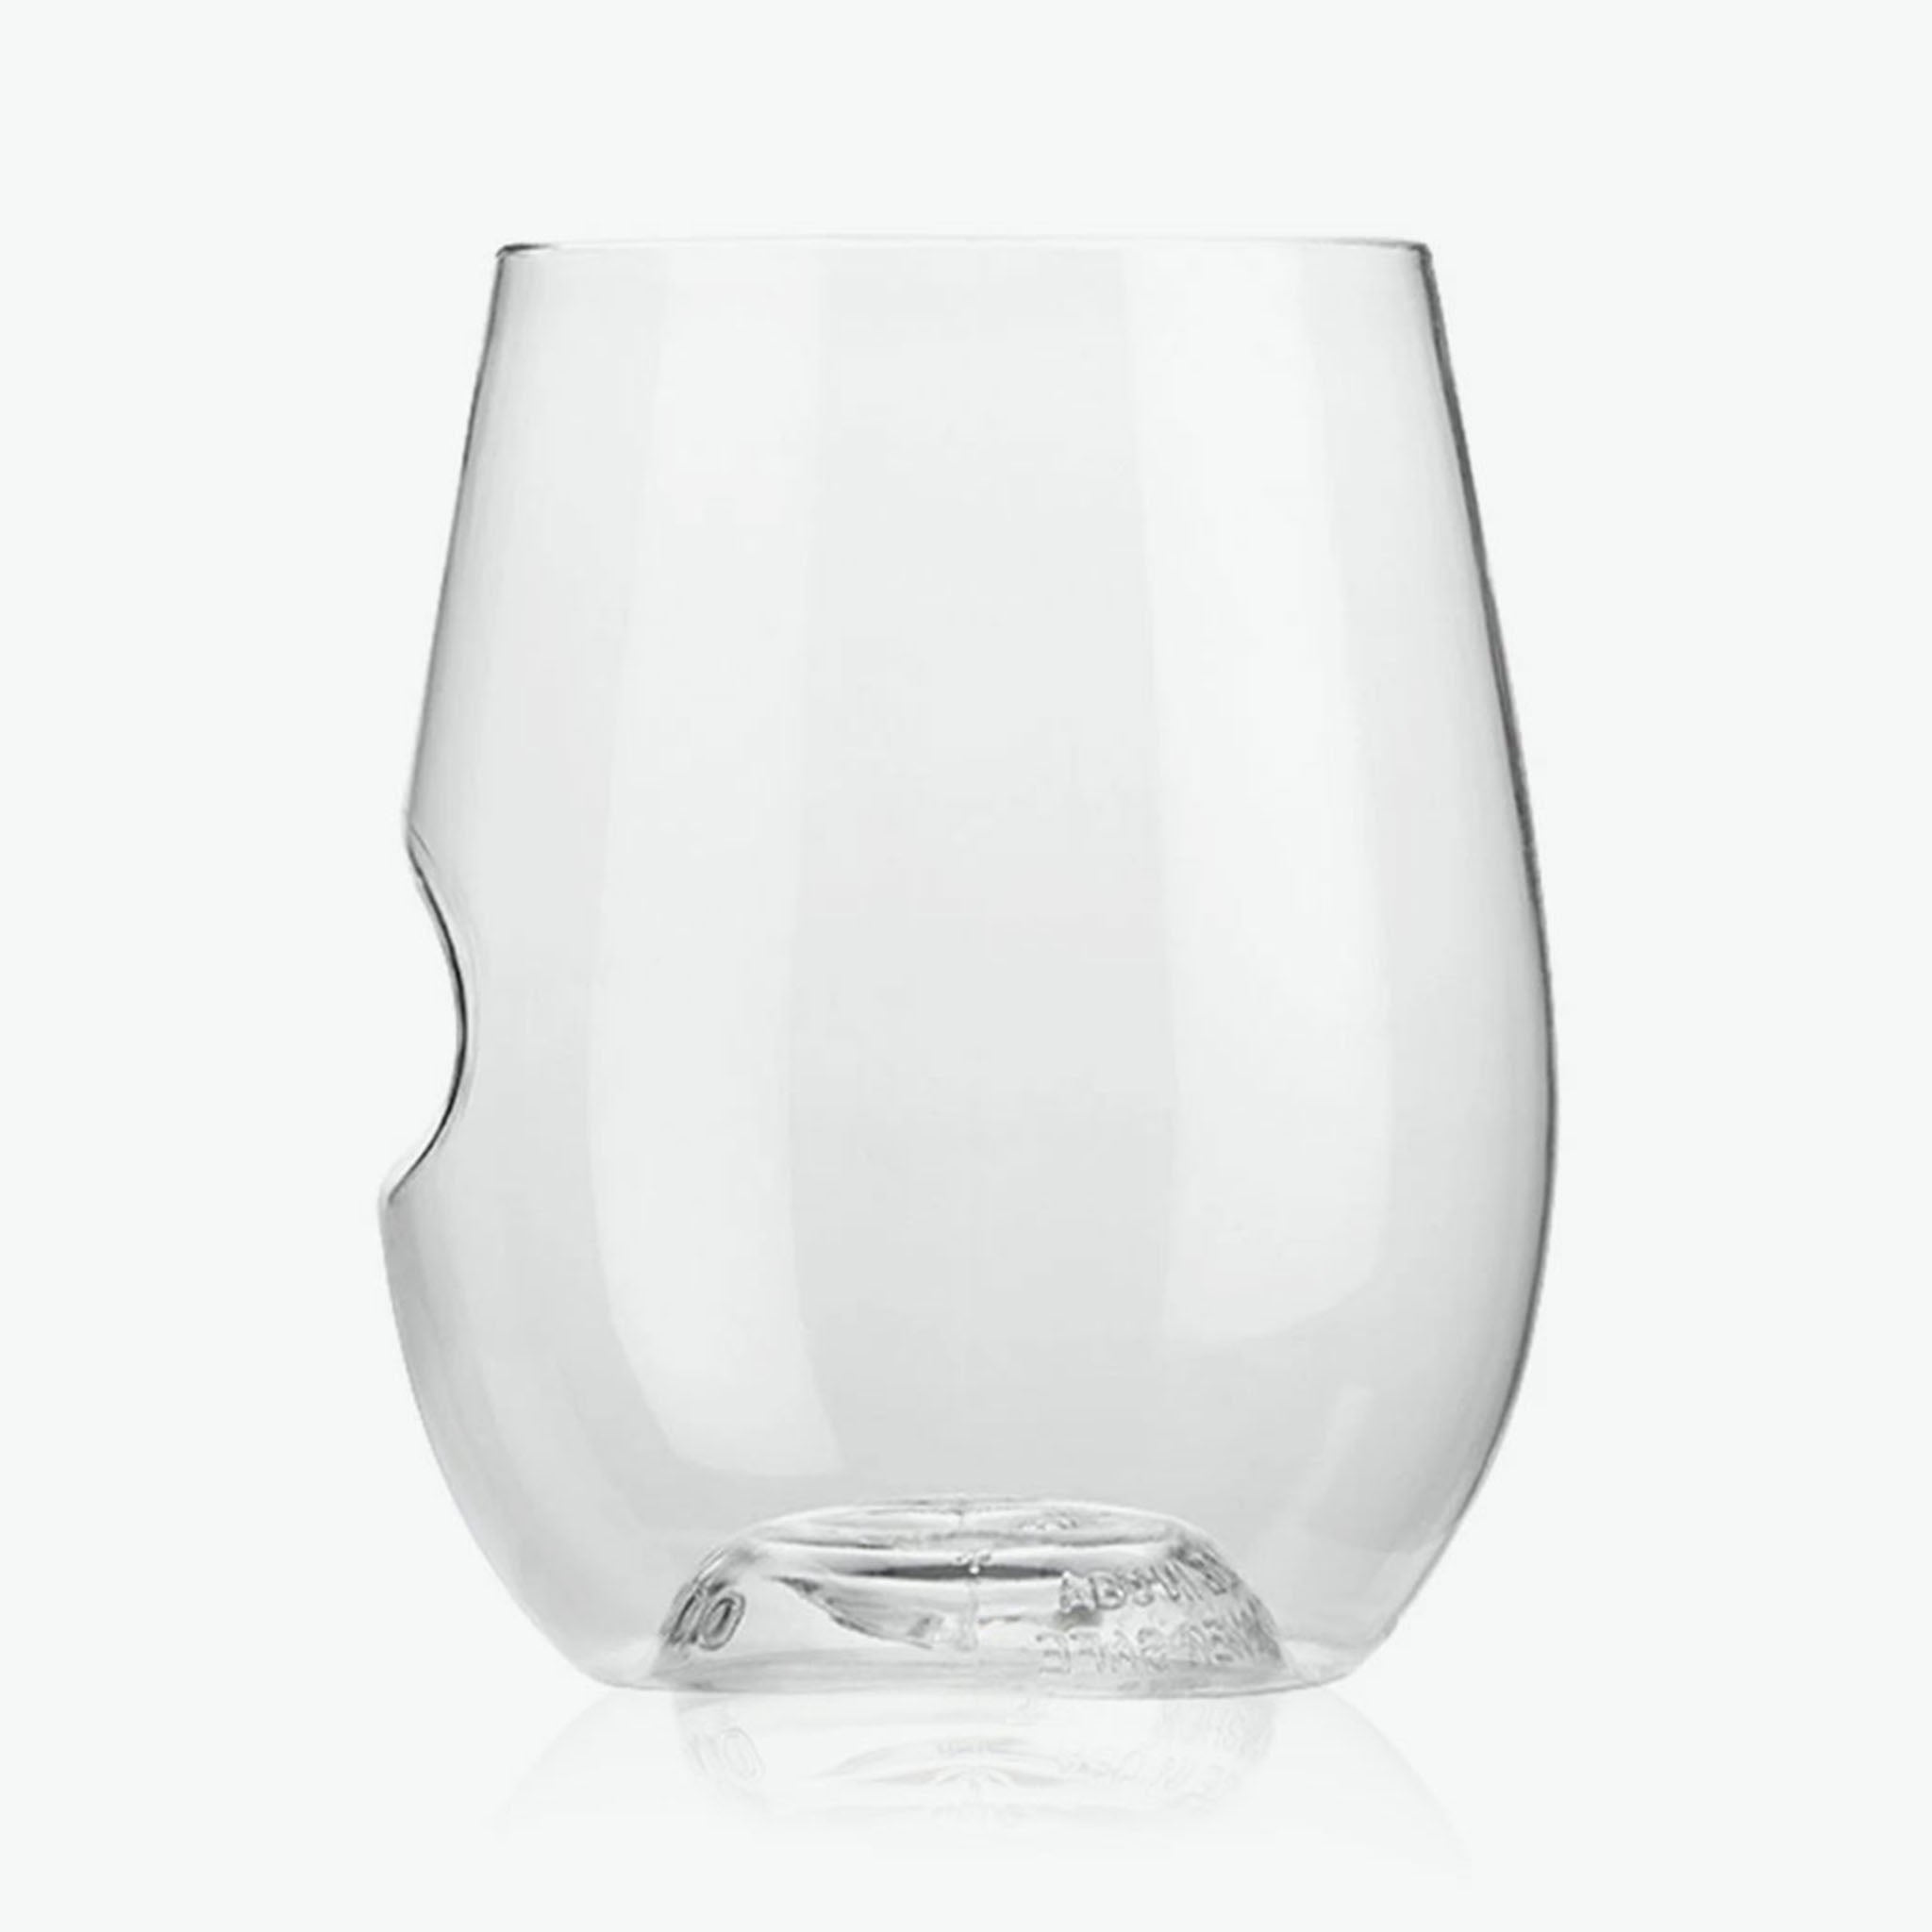 https://blueribbongeneralstore.com/cdn/shop/products/govino-whitewine-12oz-glasses-141766.jpg?v=1617401829